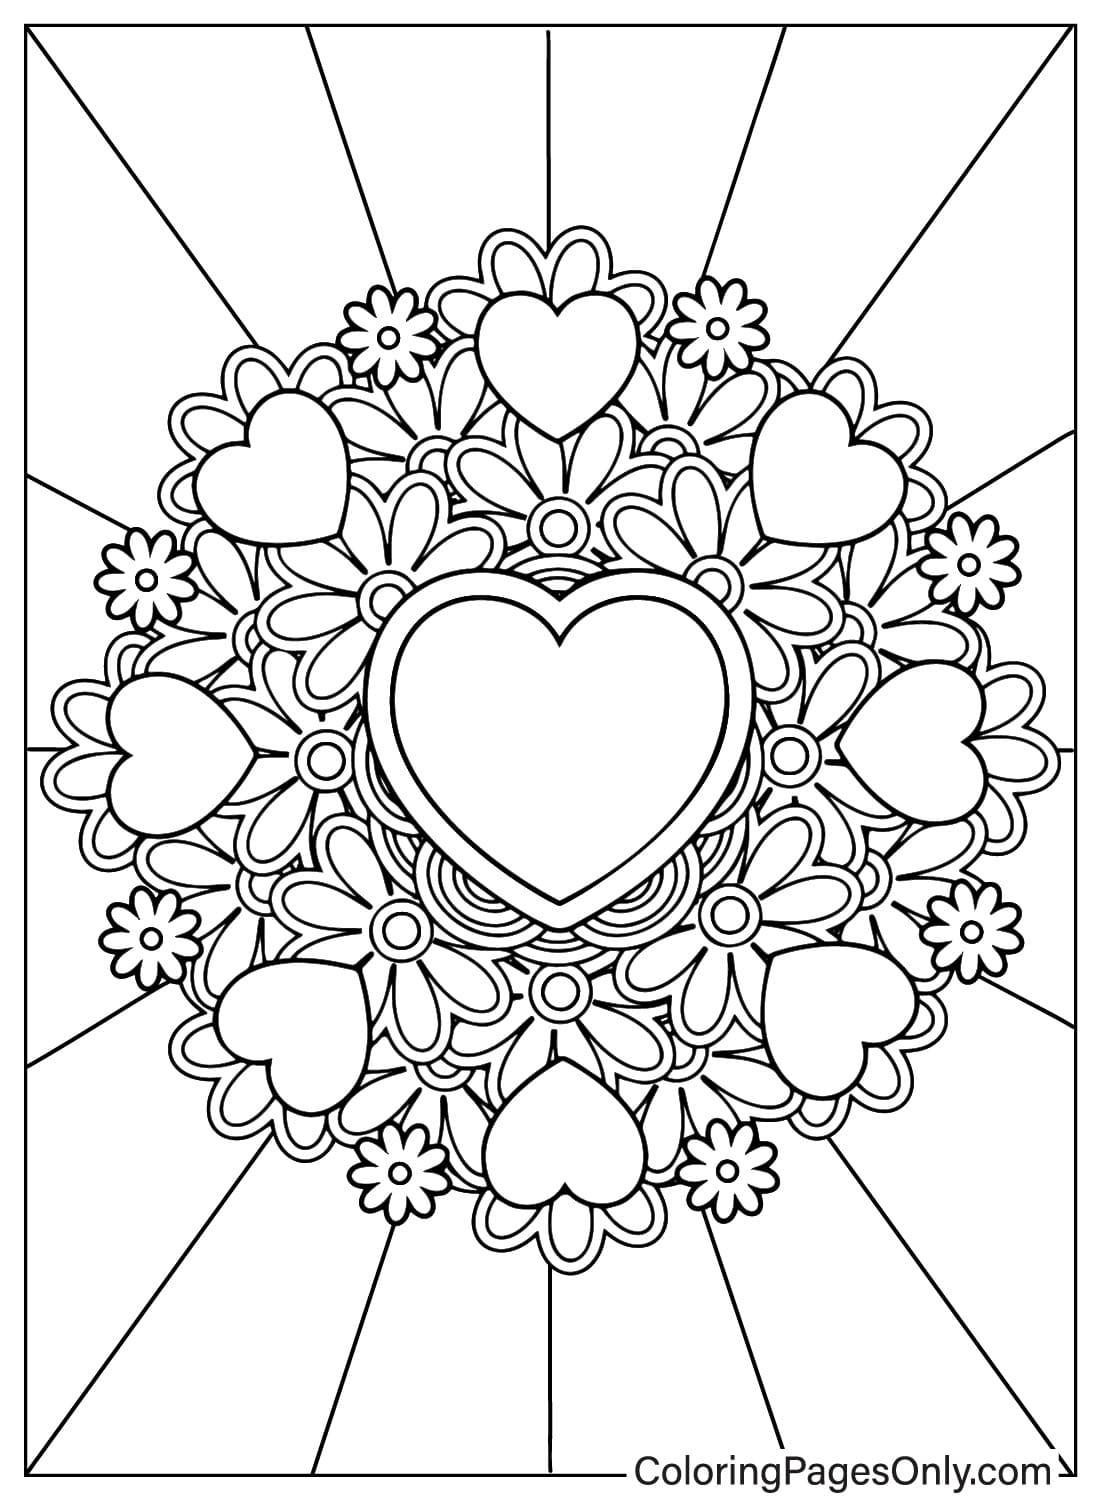 Página para colorear de corazón para imprimir gratis